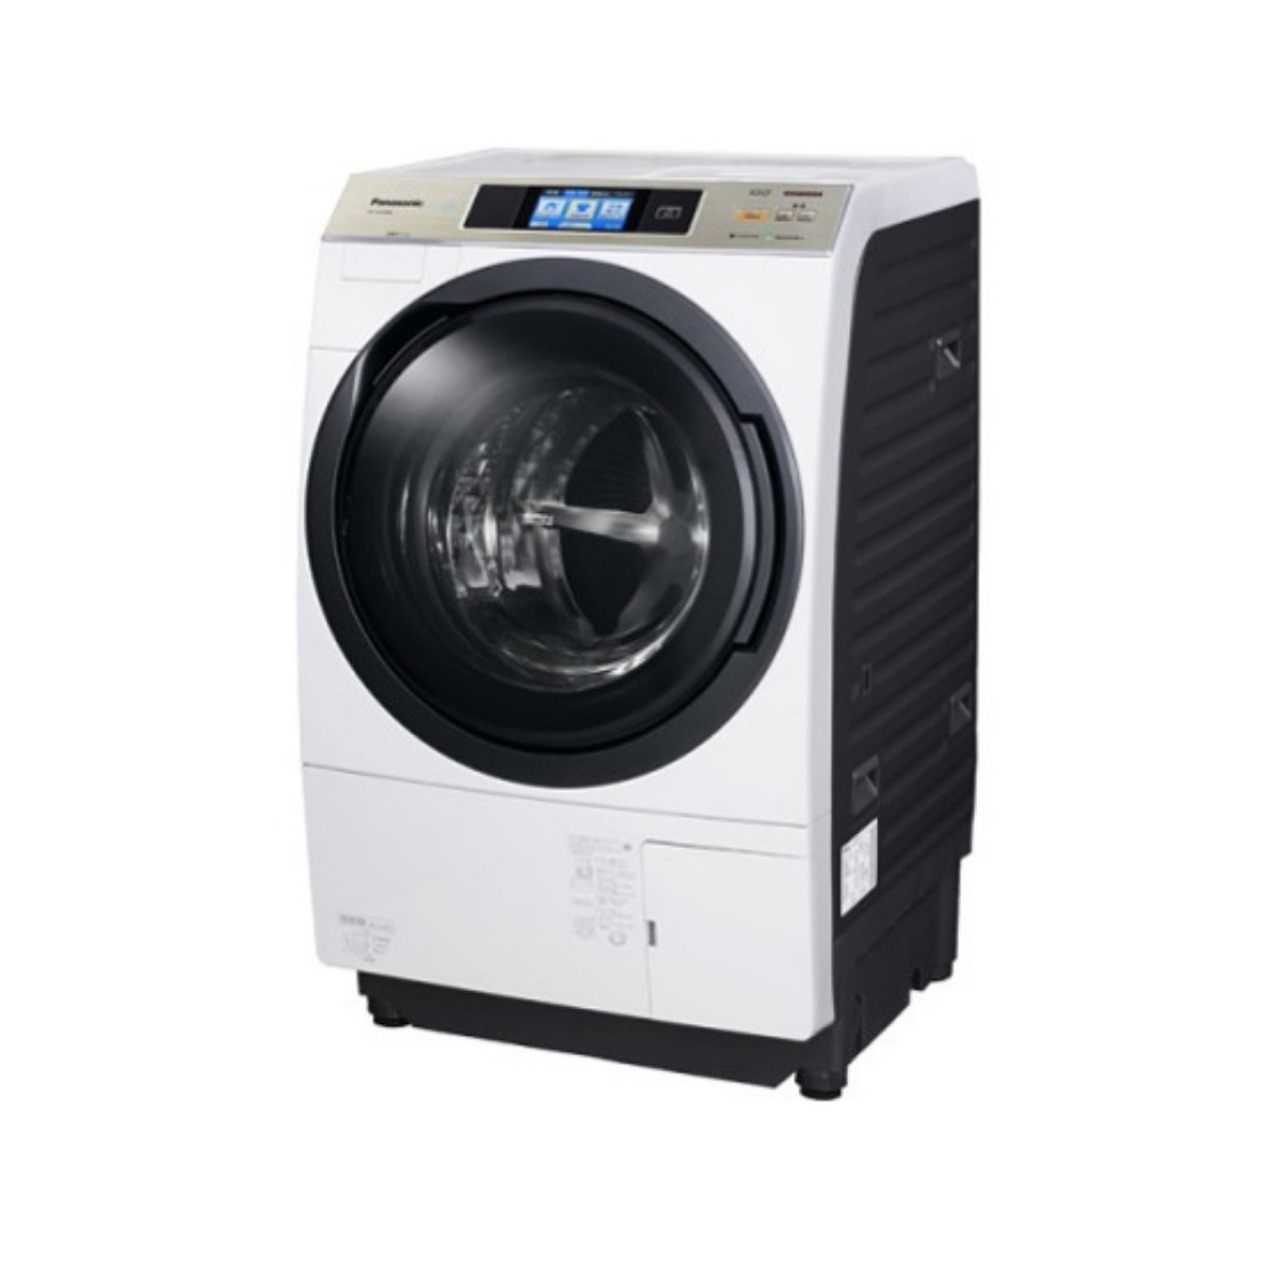 パナソニックNA-VX9500Rななめドラム洗濯乾燥機